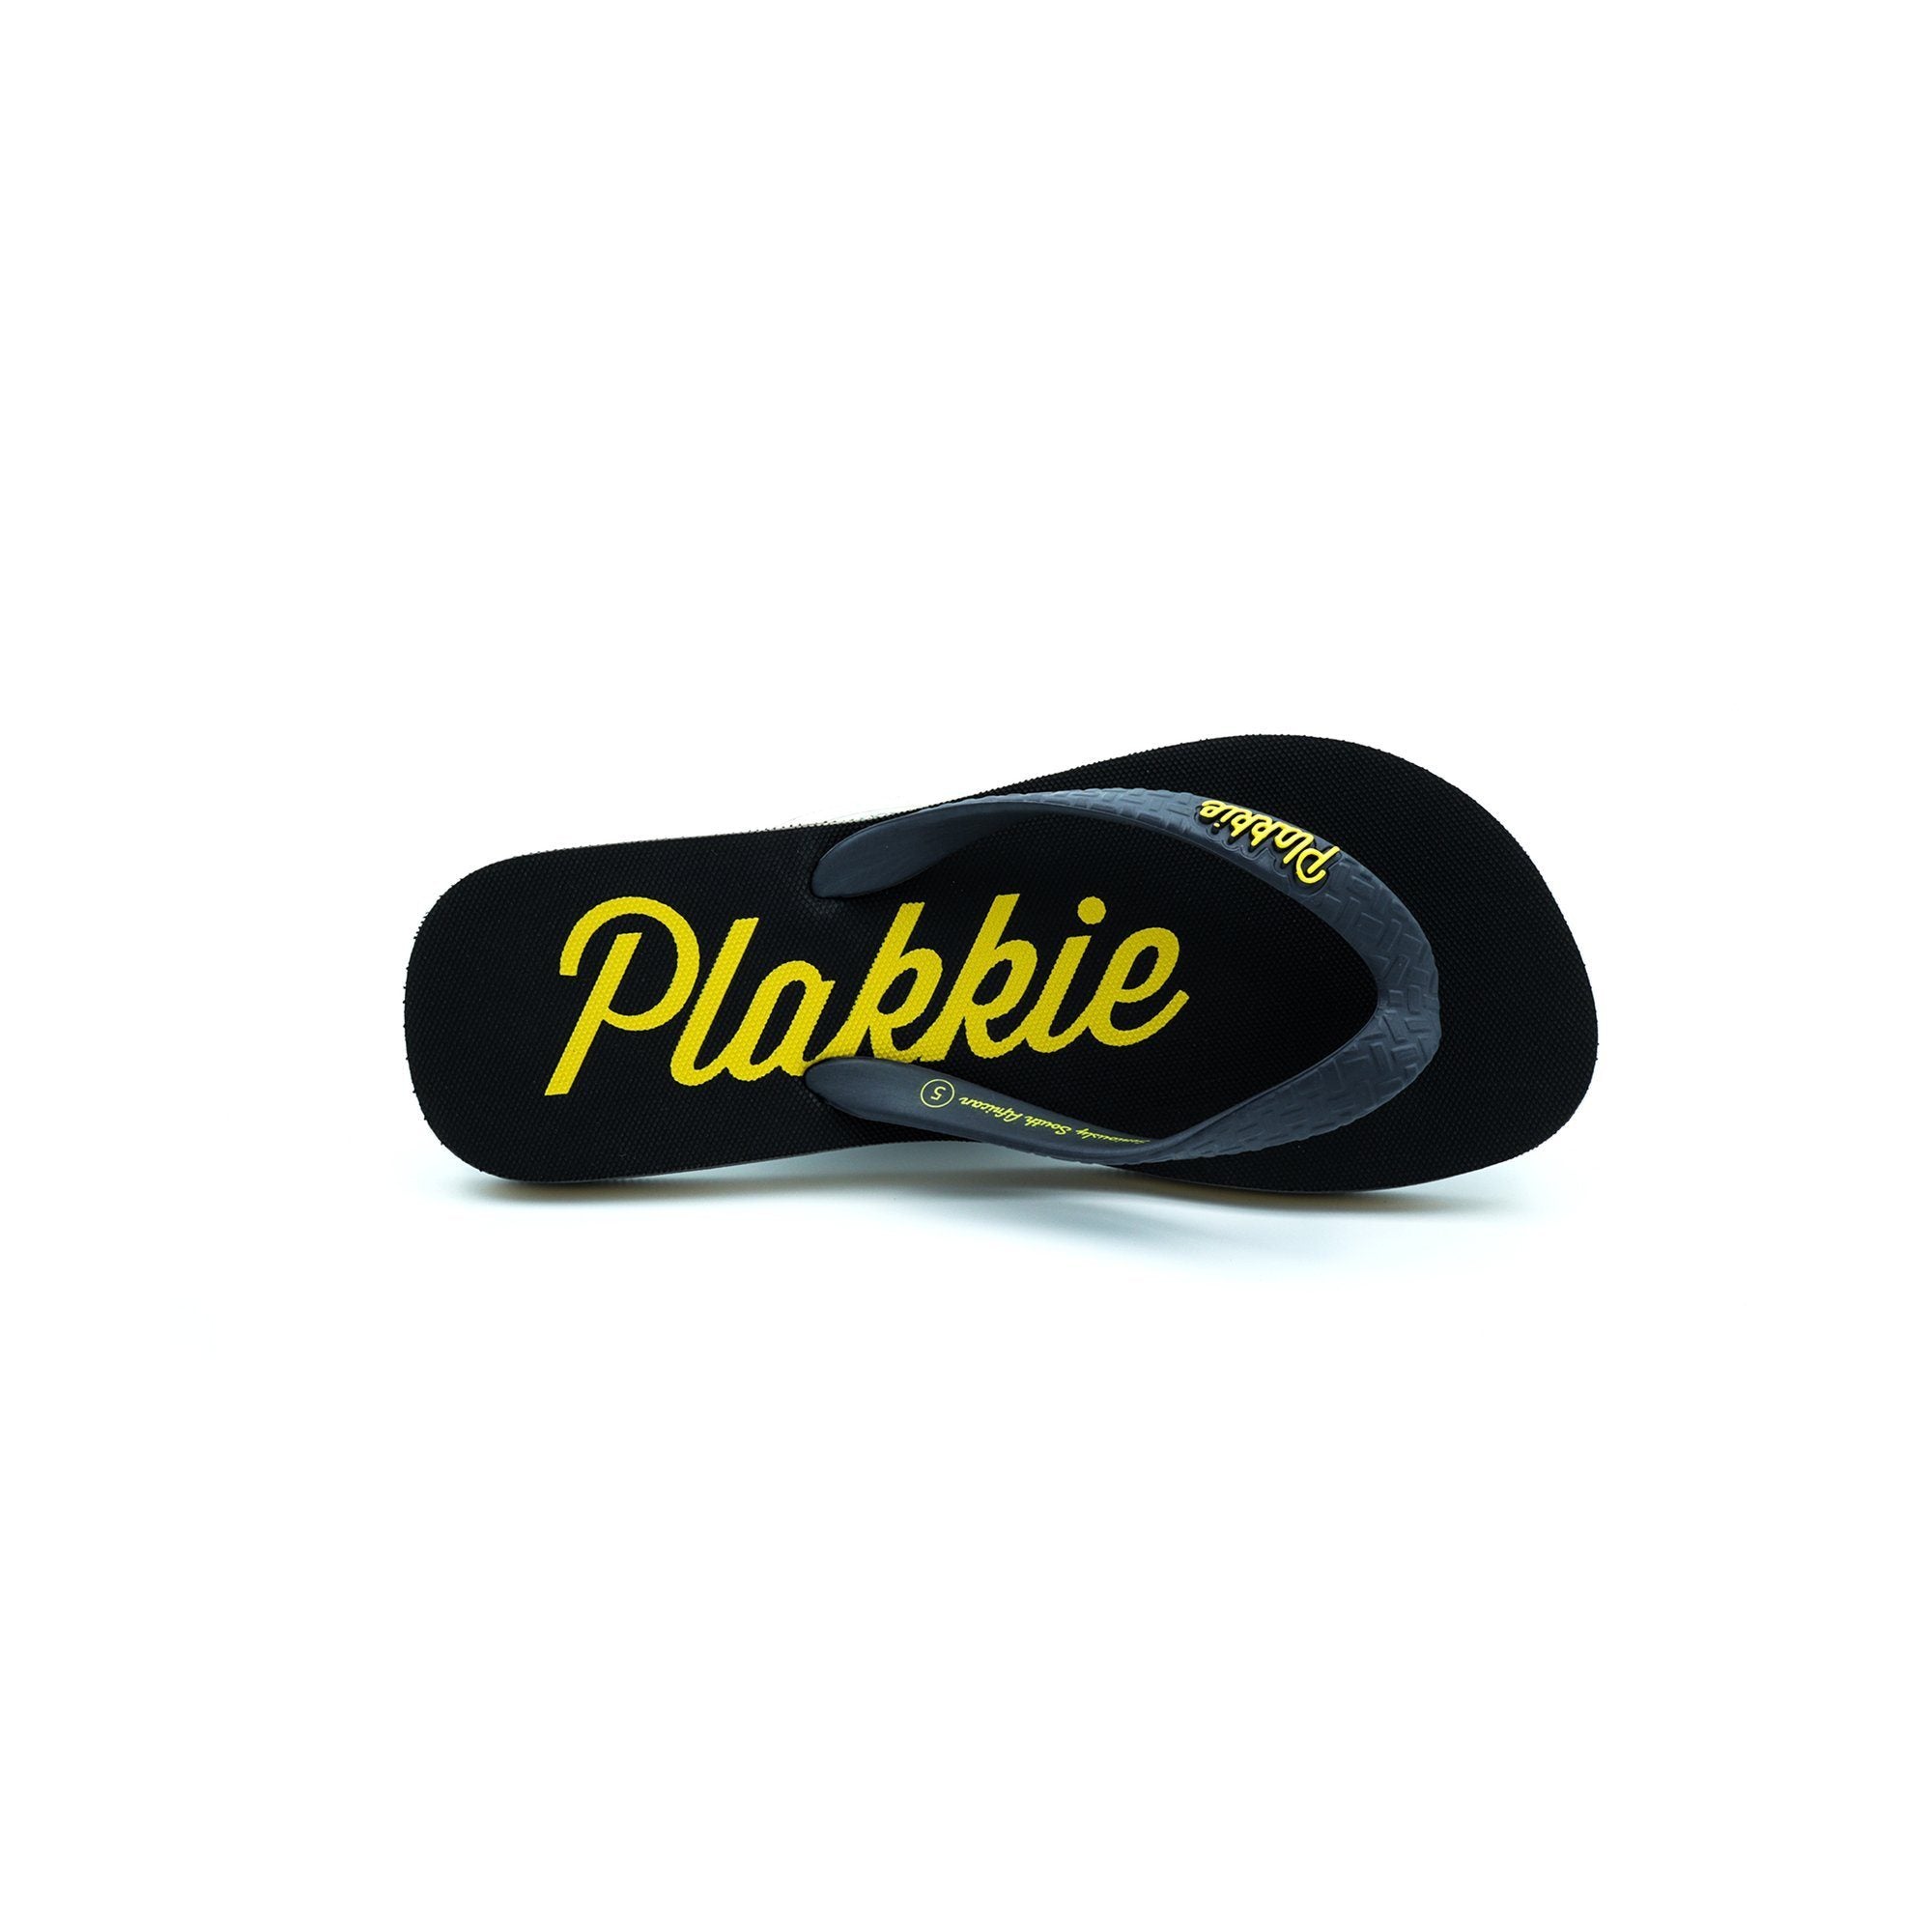 Plakkie Ushaka Unisex Flip Flops clothing & accessories Plakkie